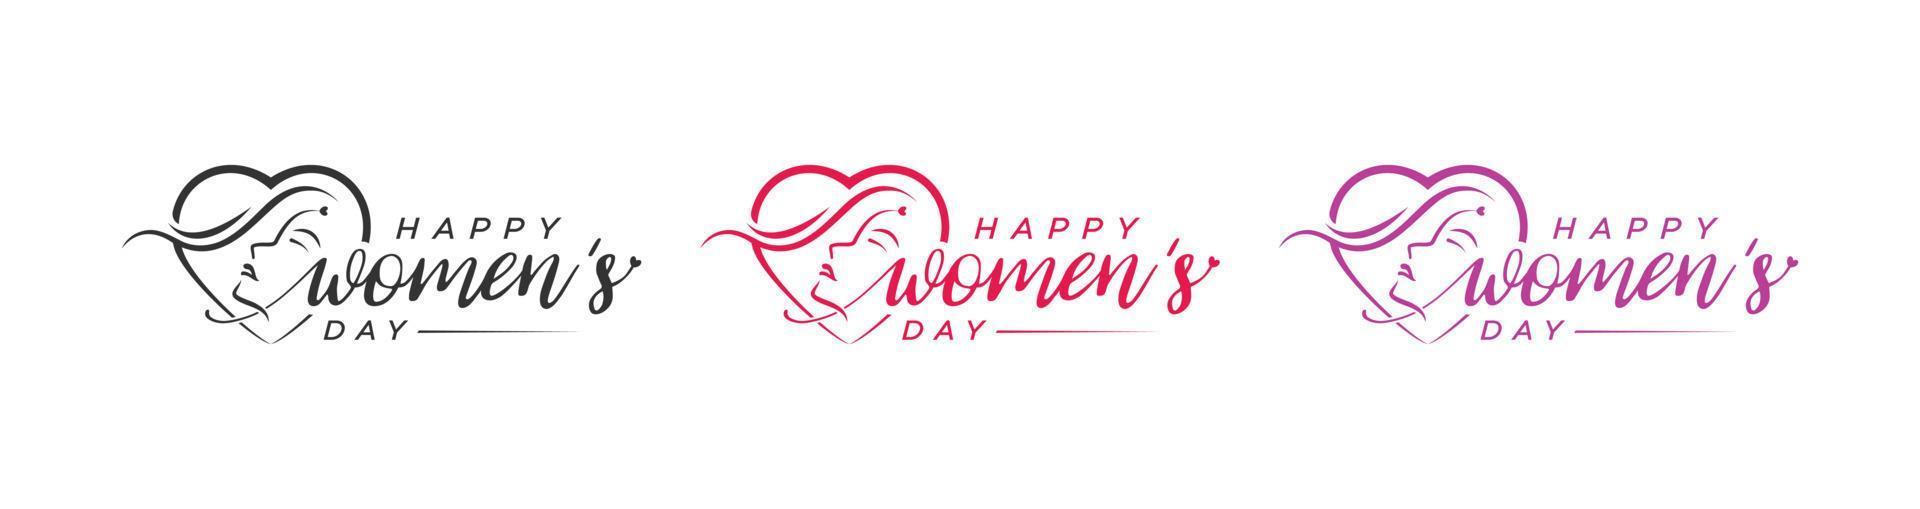 contento De las mujeres día logo diseño, contento De las mujeres día marzo 8, mujer rostro, amor vector logo diseño, internacional o nacional De las mujeres día logo